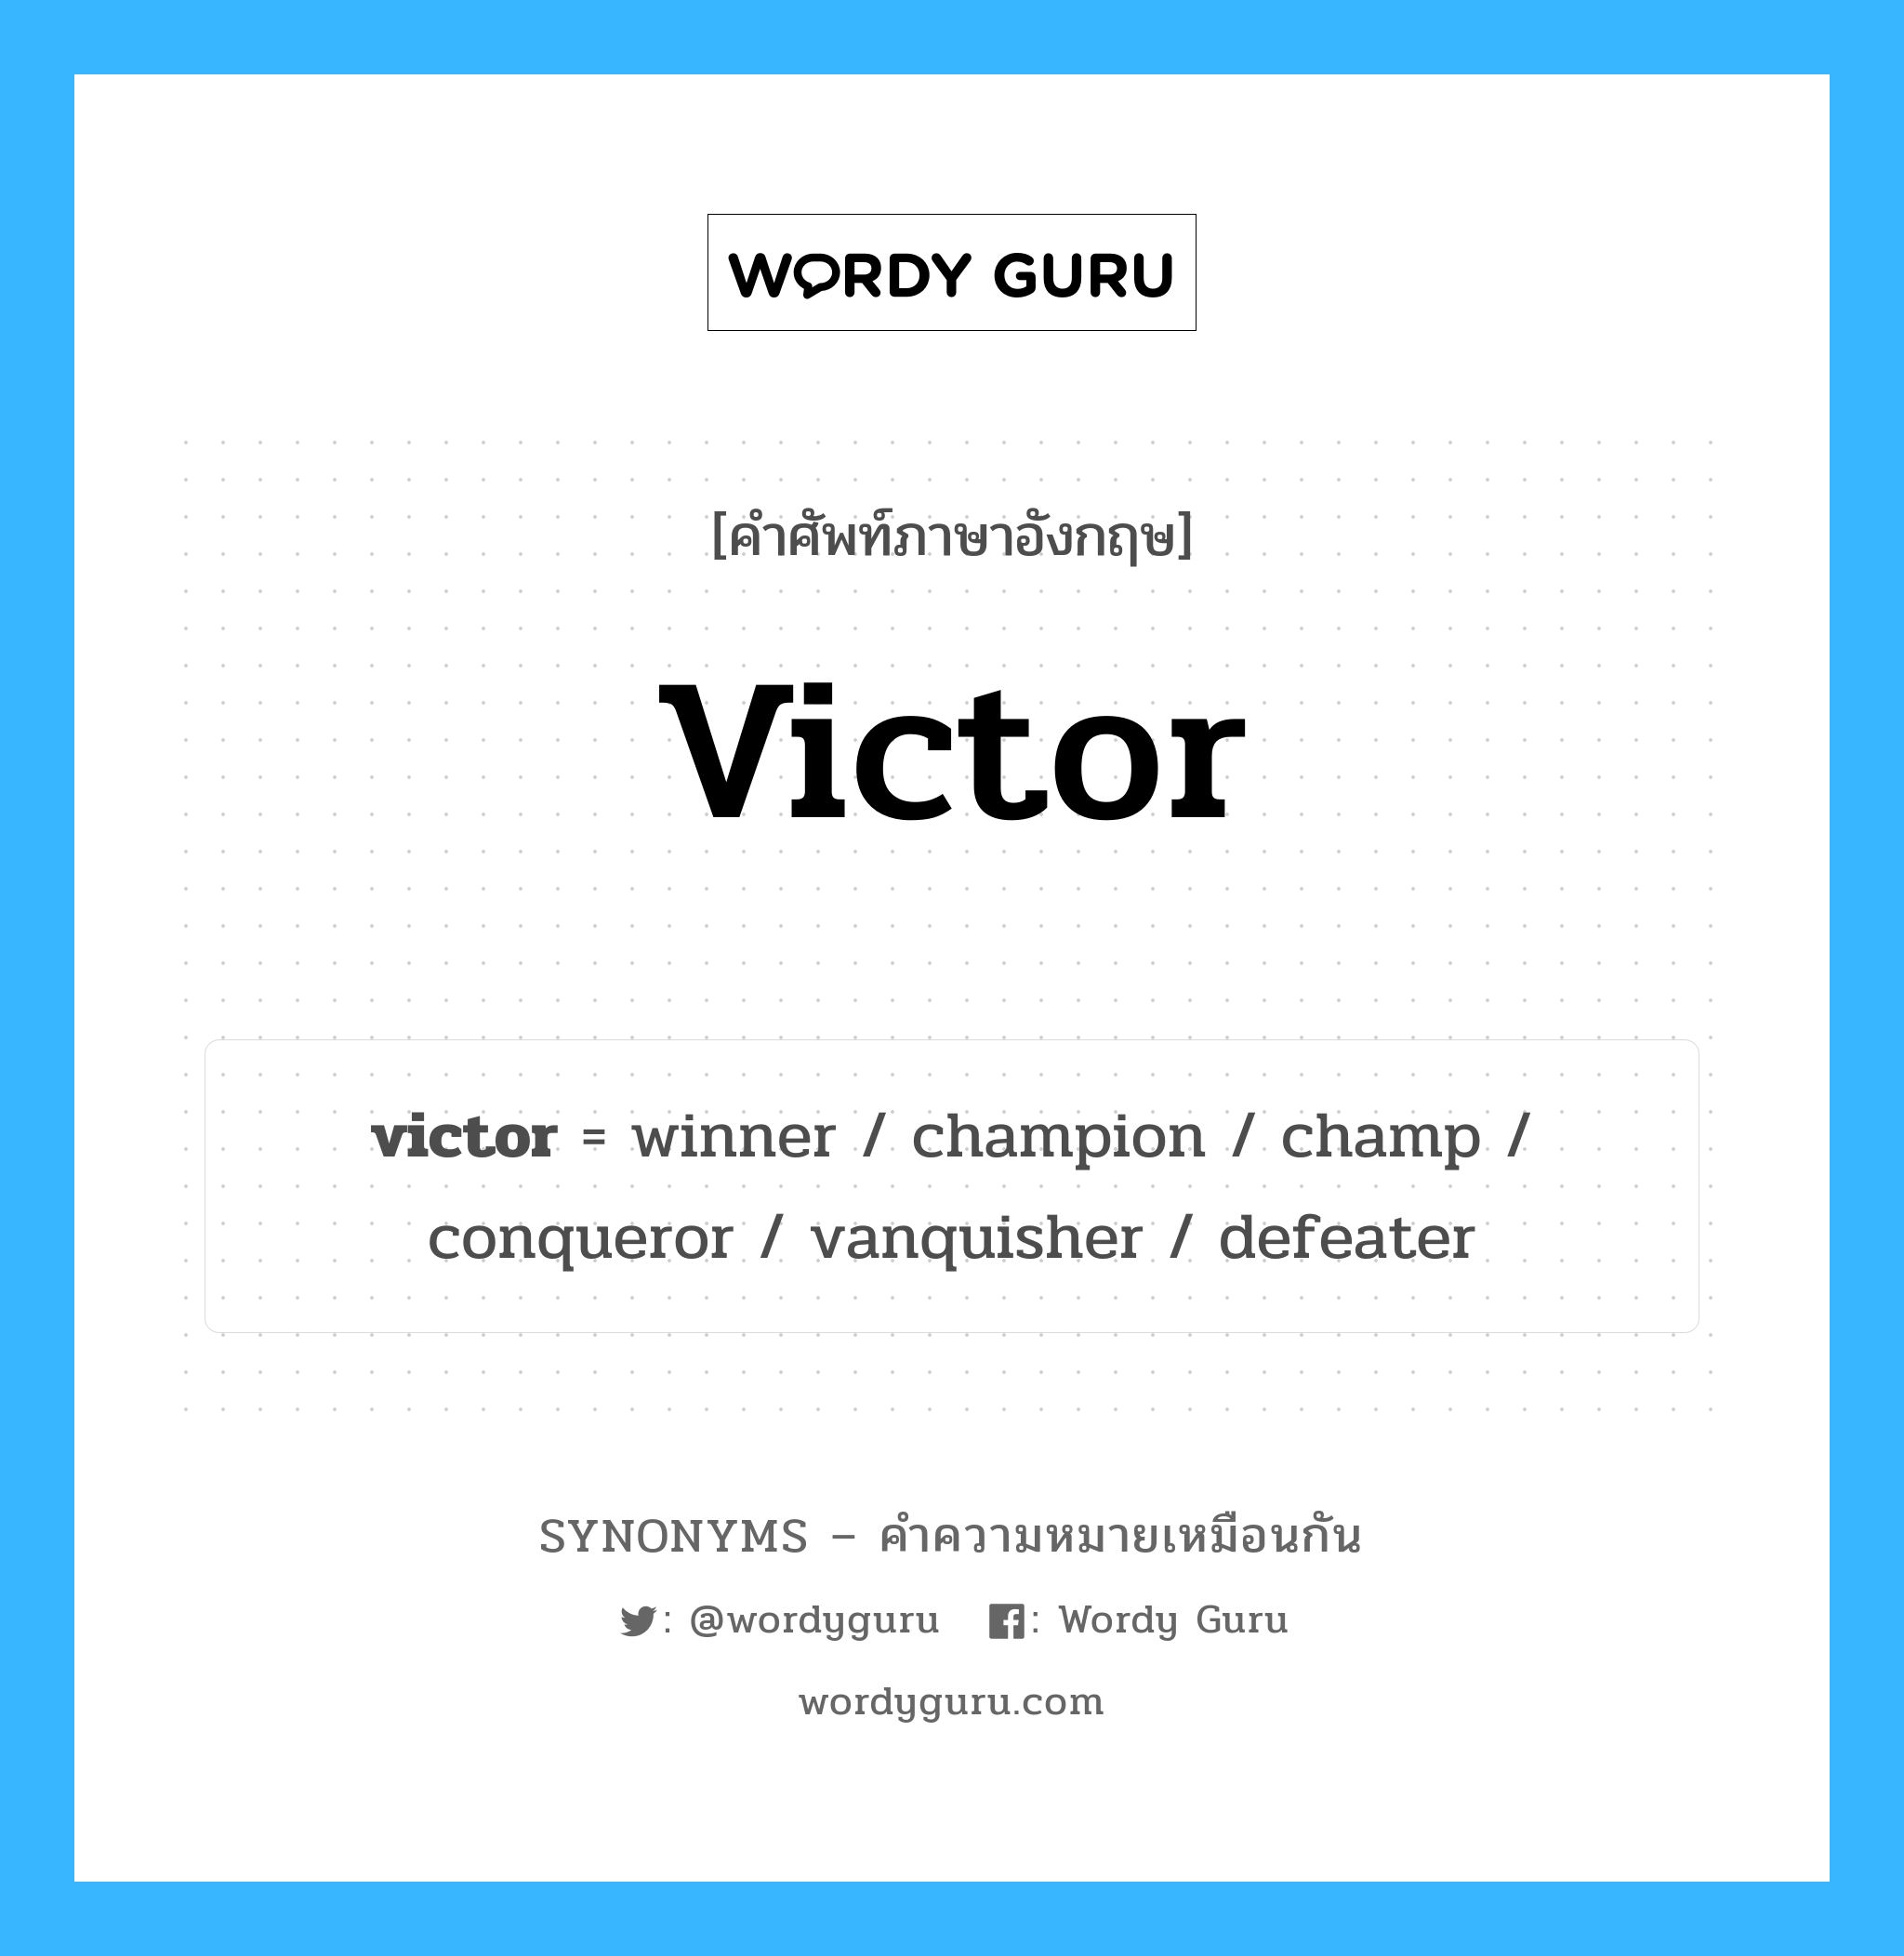 victor เป็นหนึ่งใน winner และมีคำอื่น ๆ อีกดังนี้, คำศัพท์ภาษาอังกฤษ victor ความหมายคล้ายกันกับ winner แปลว่า ผู้ชนะ หมวด winner